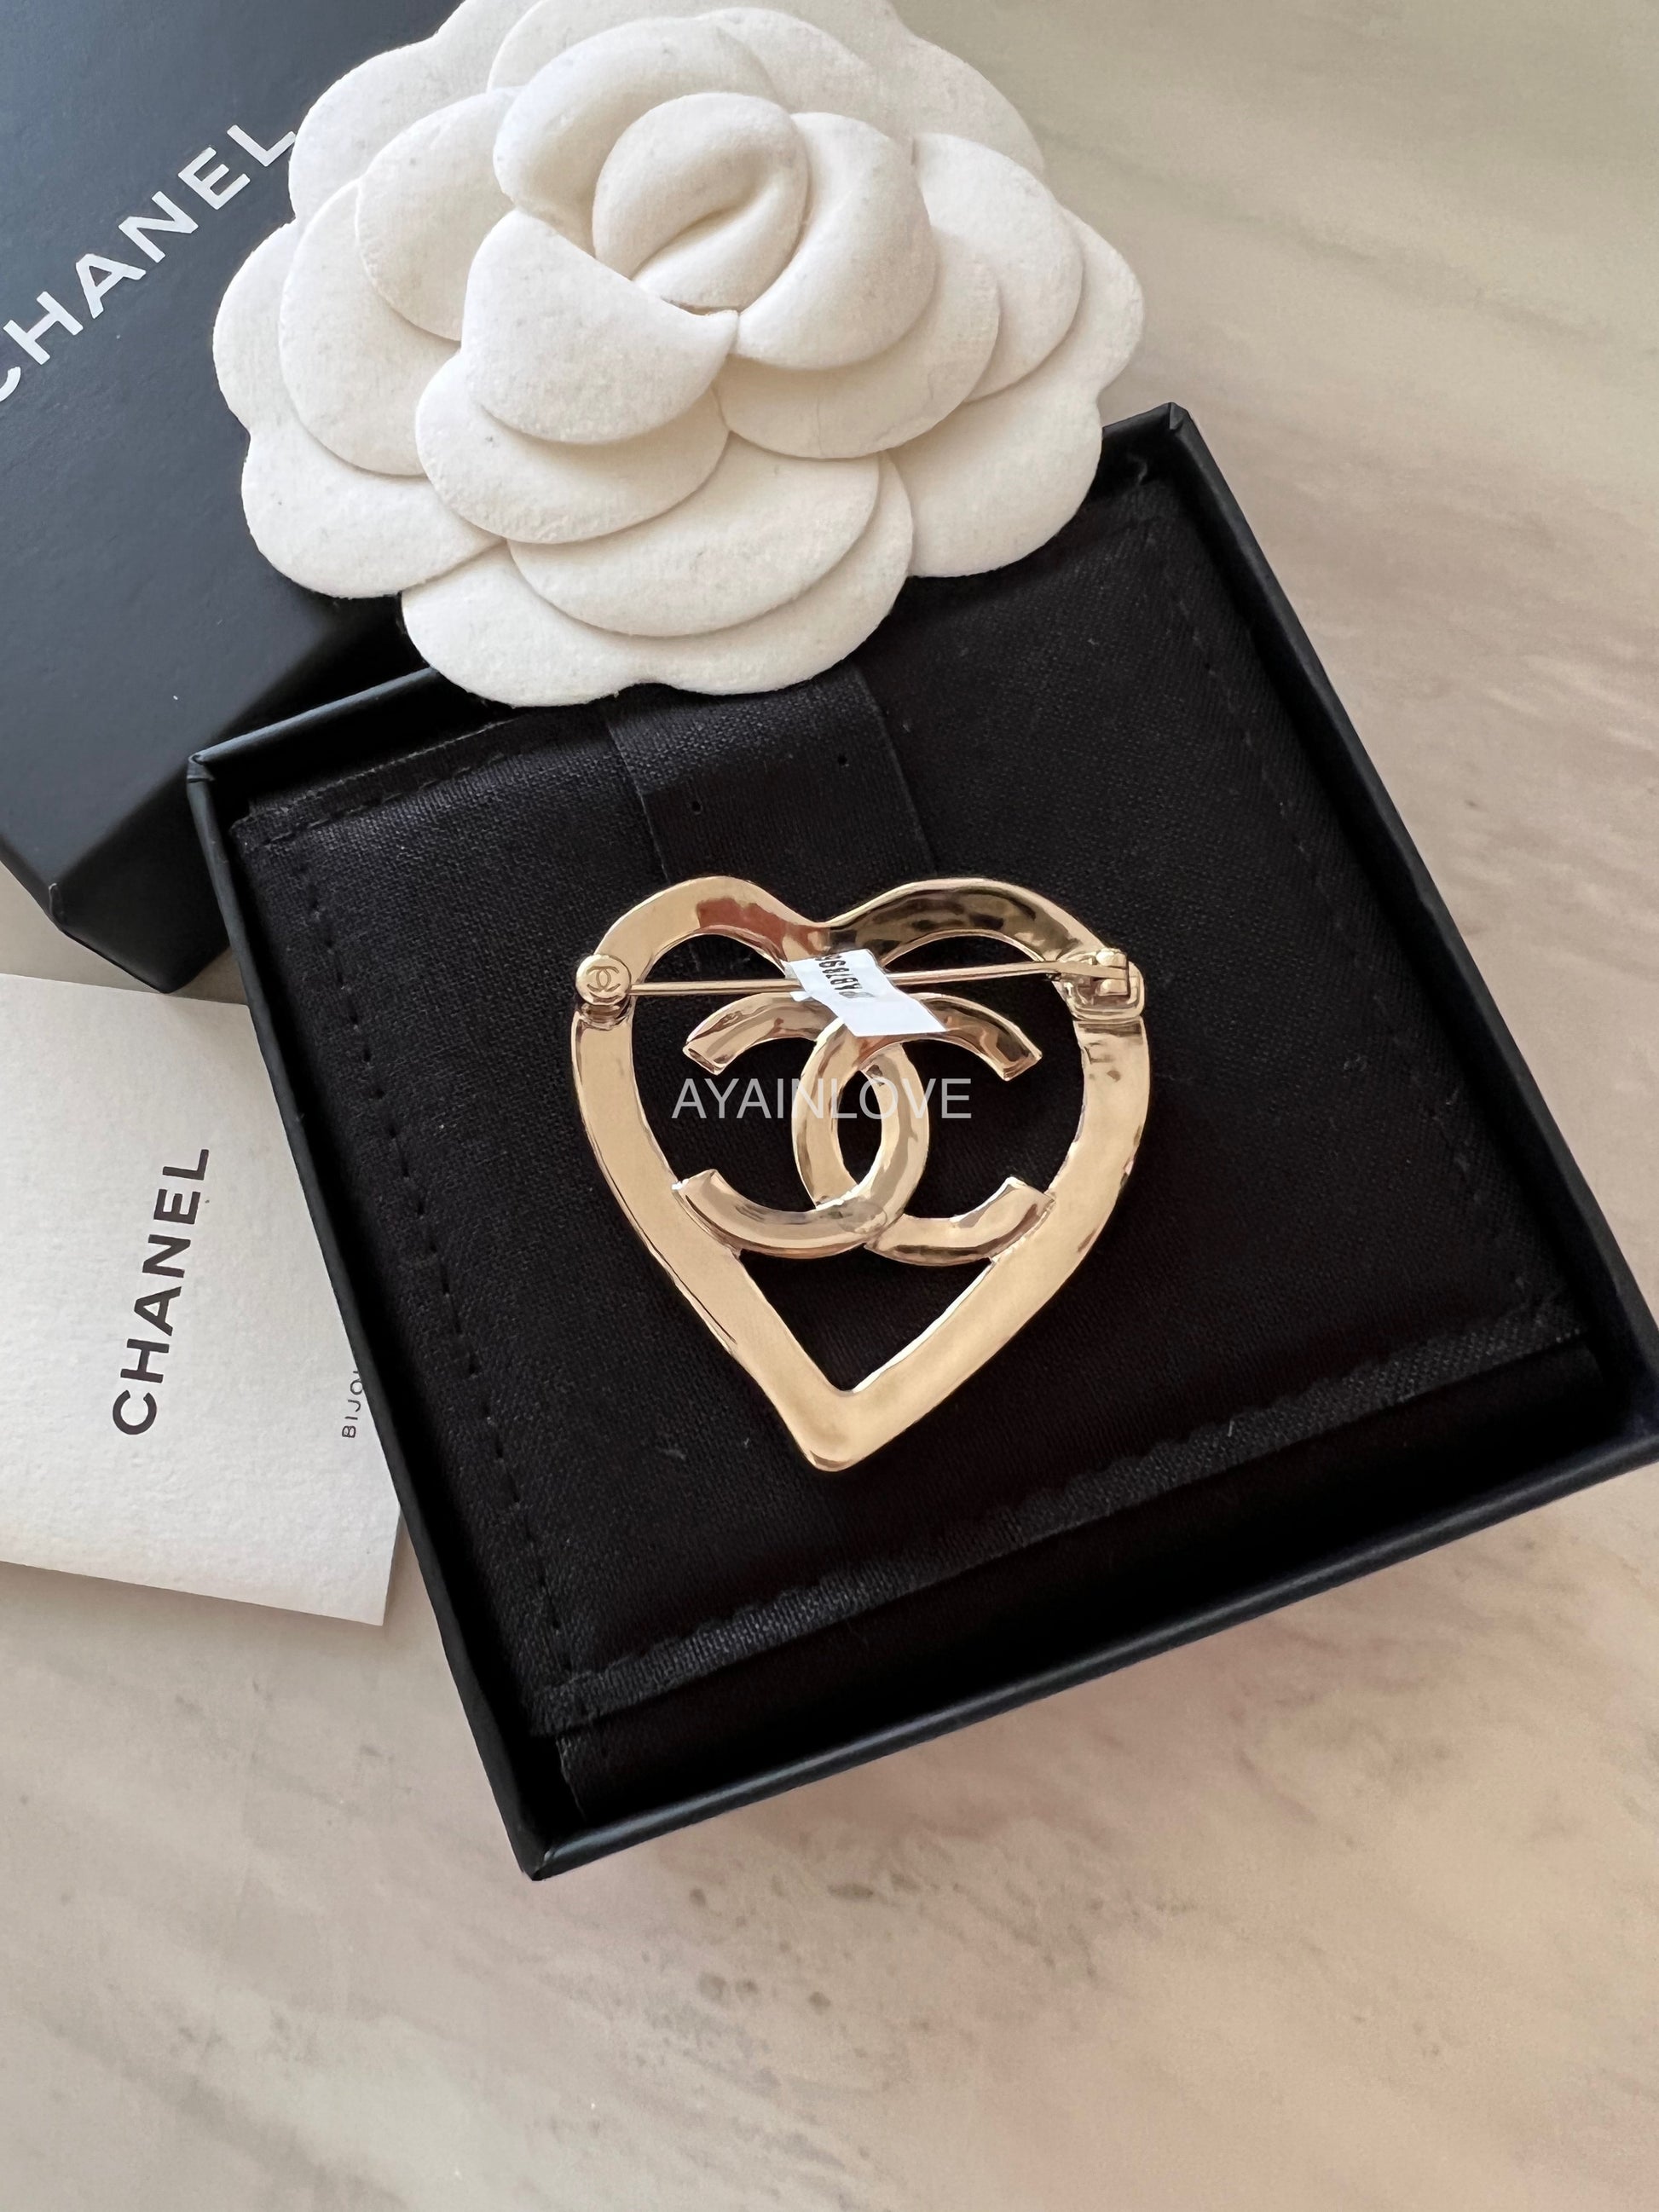 Chanel Light Gold Imitation Pearl Brooch, 2015